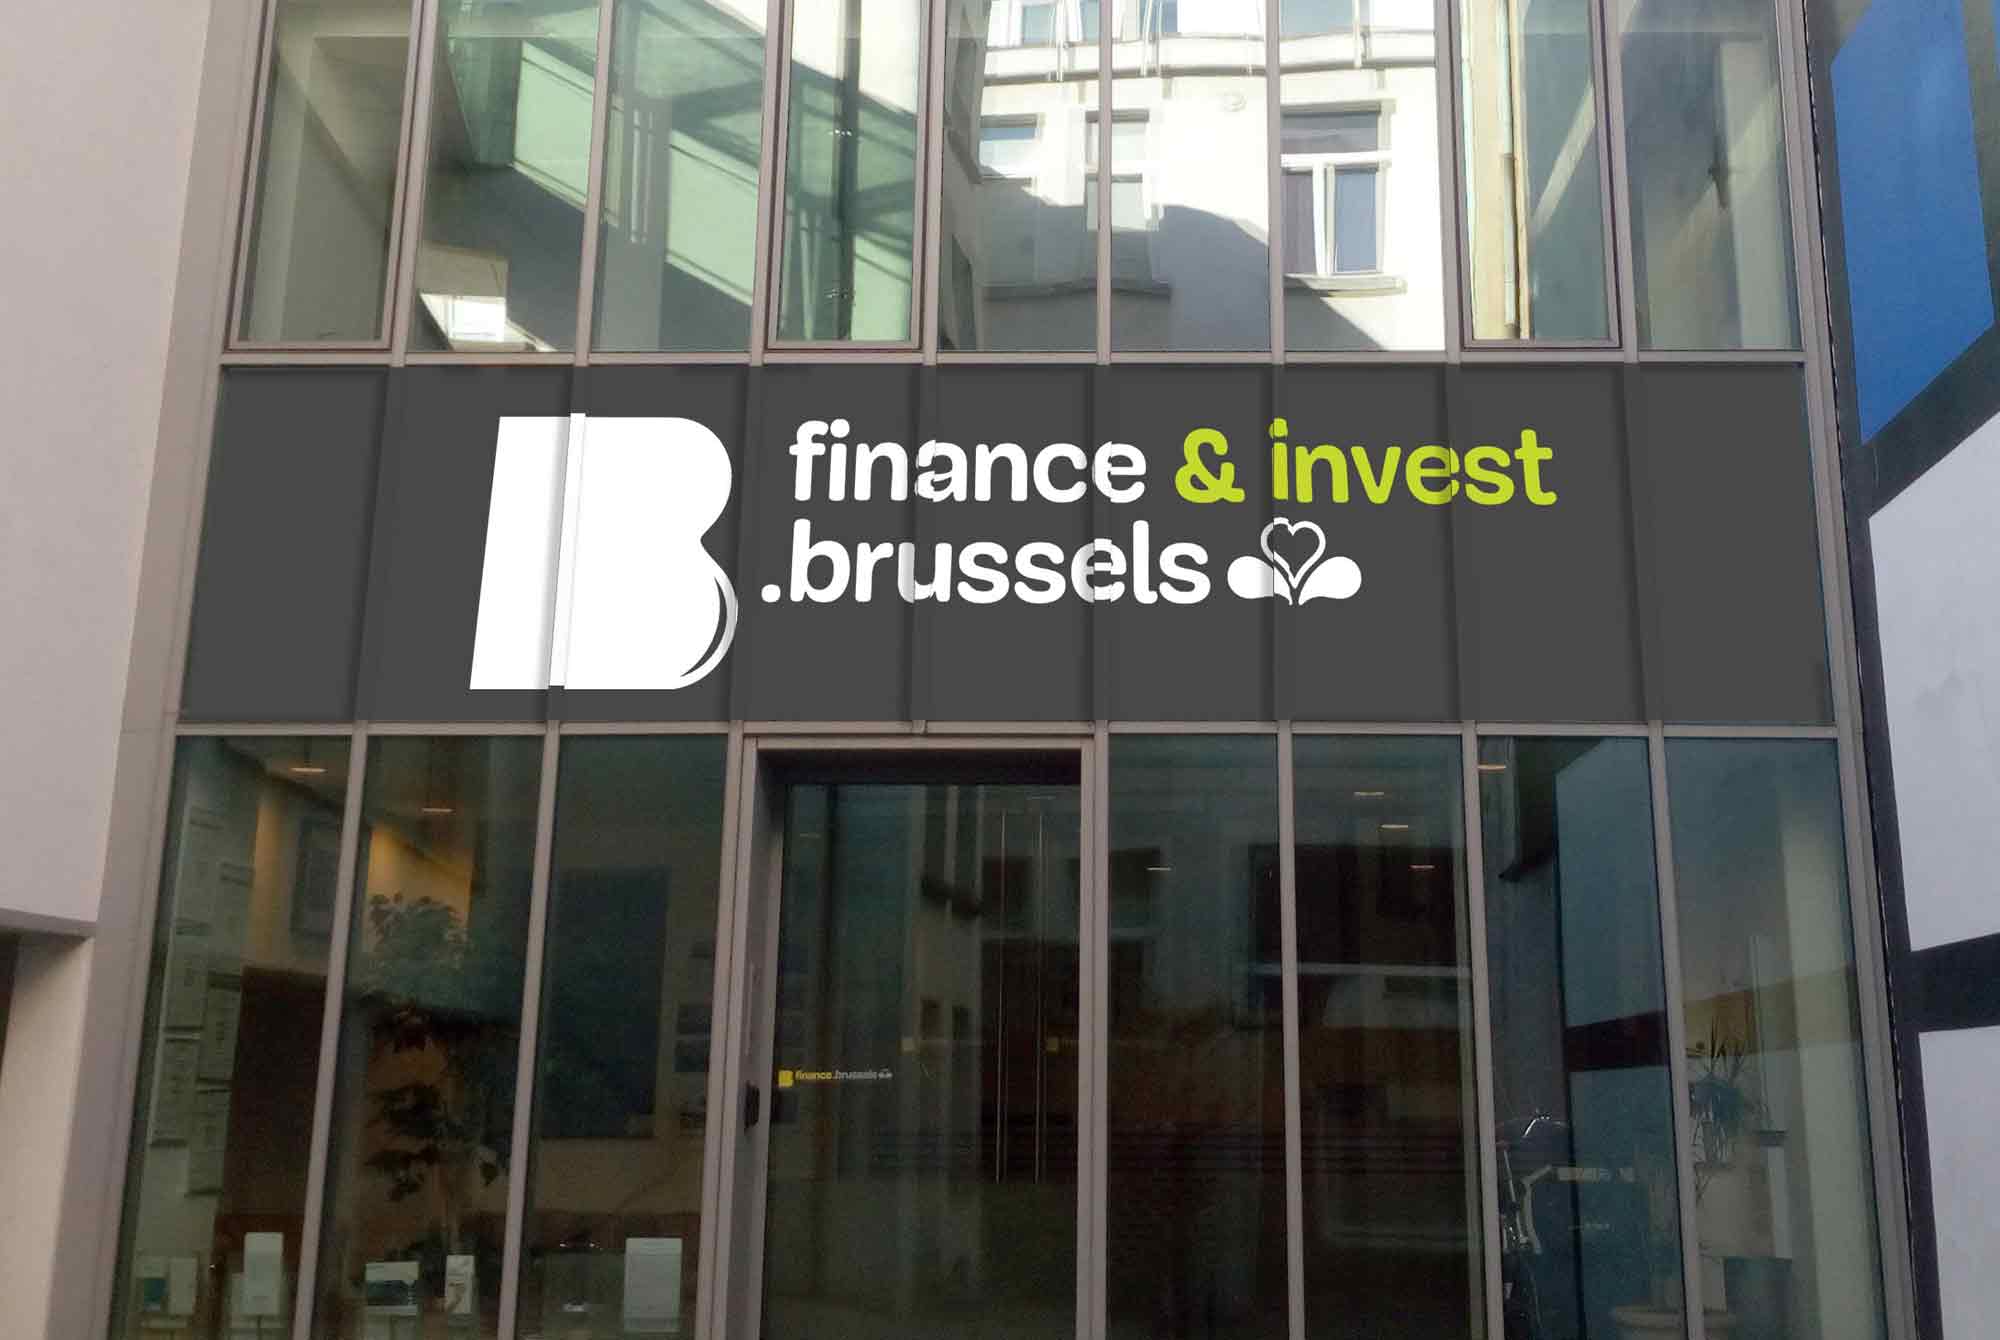 Bureaux - Finance.Brussels